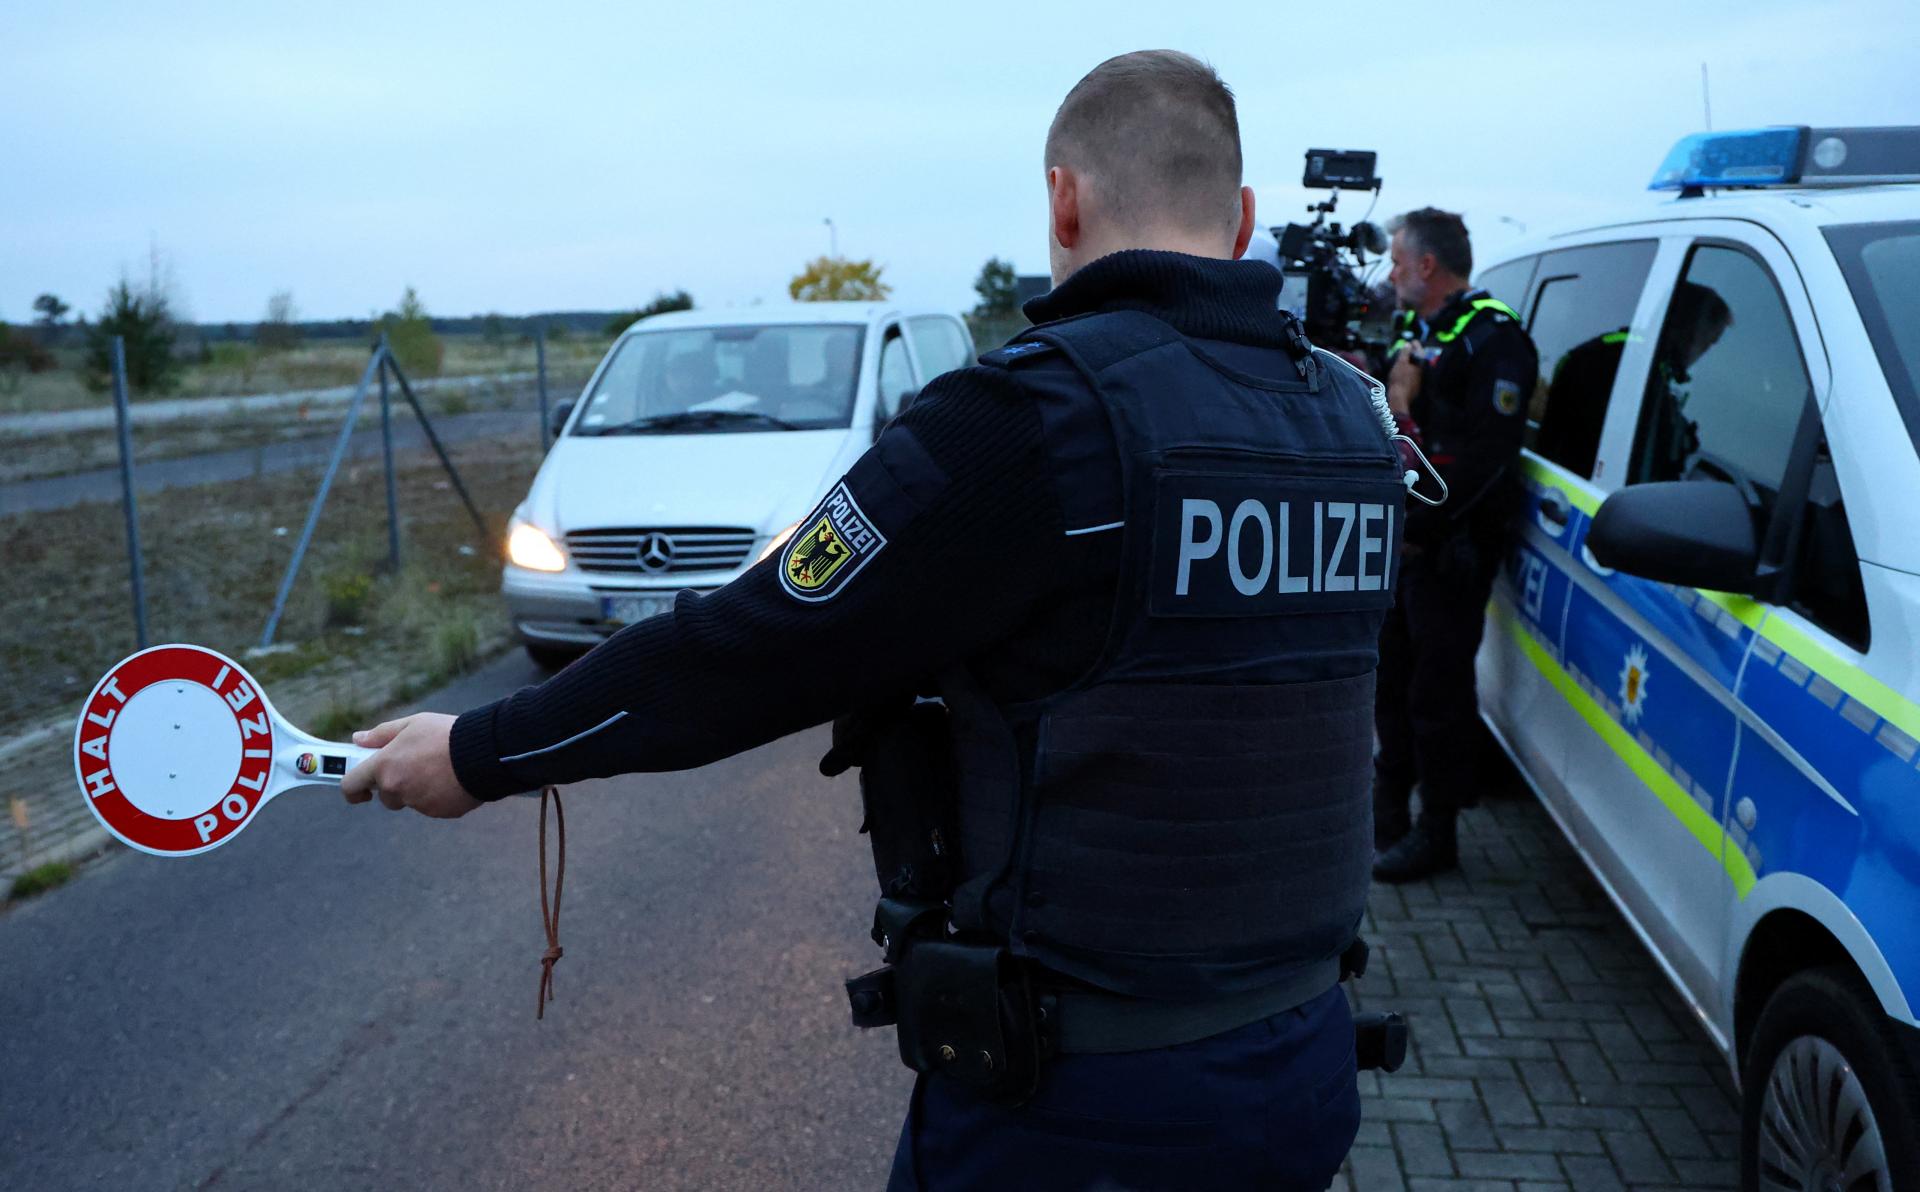 Nemecko ponechá kontroly na hraniciach, sprísni dávky migrantom